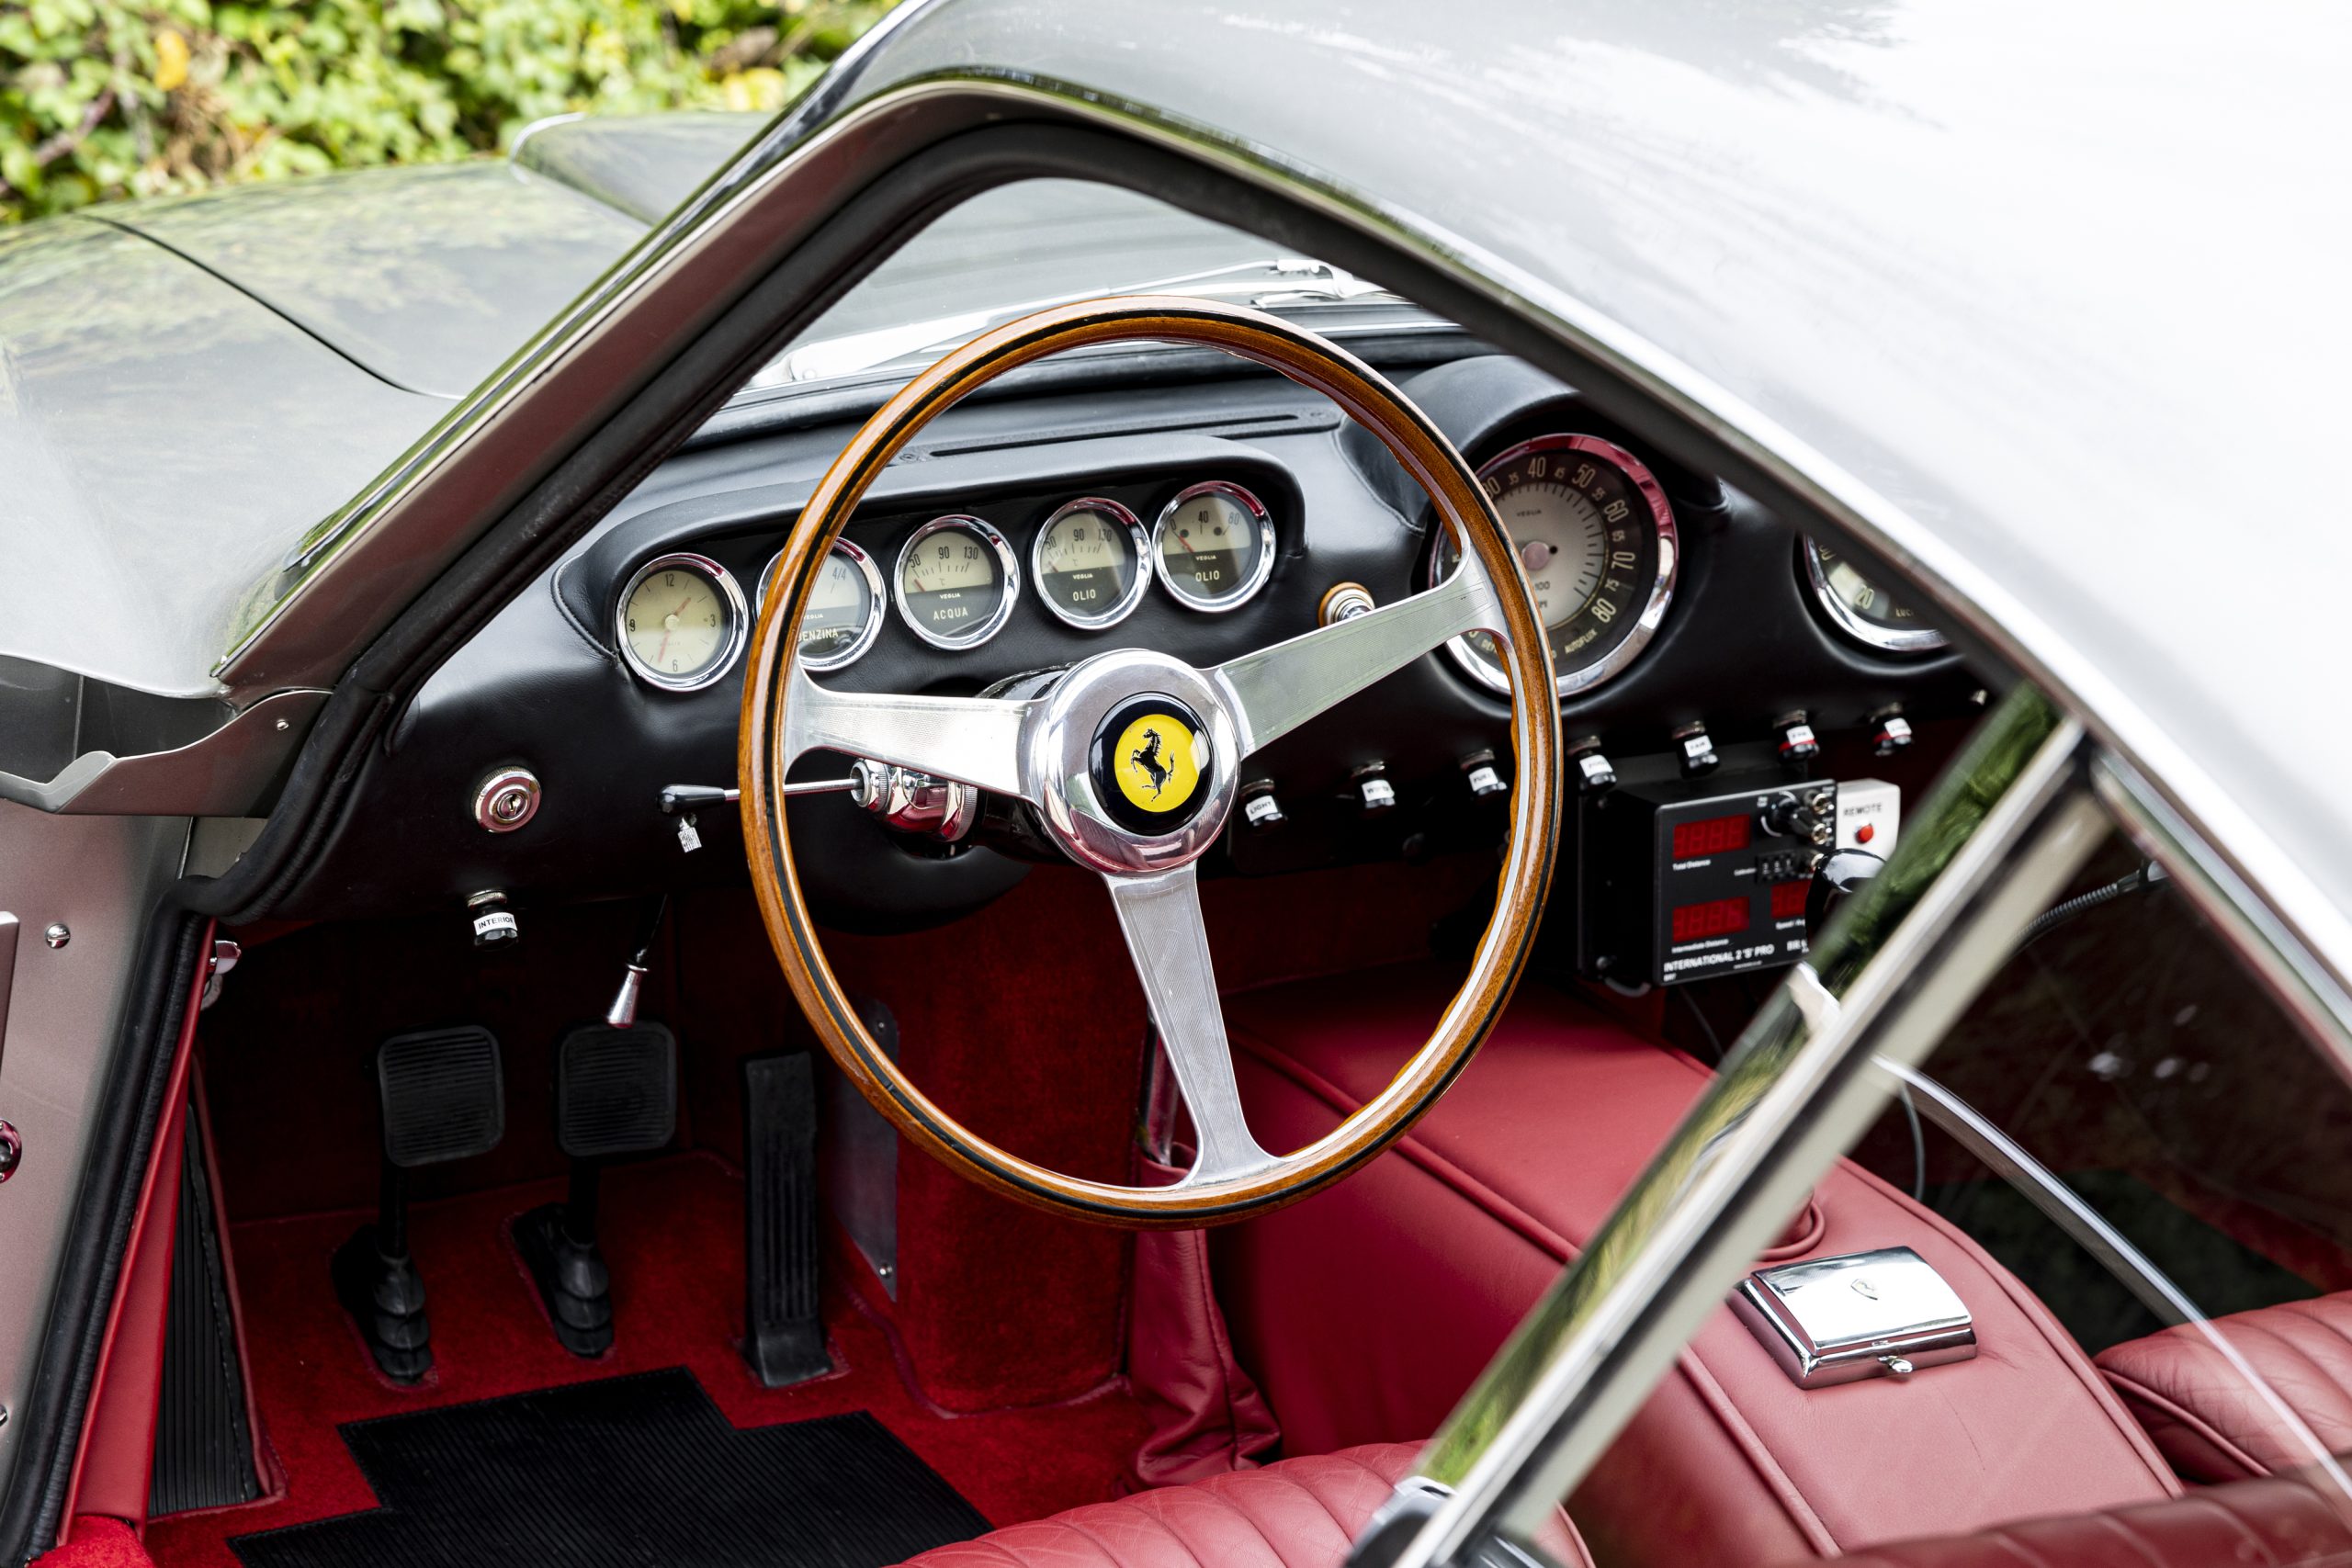 1963 Ferrari 250 GT/L Berlinetta Lusso by Scaglietti Simon Clay ©2023 Courtesy of RM Sotheby's